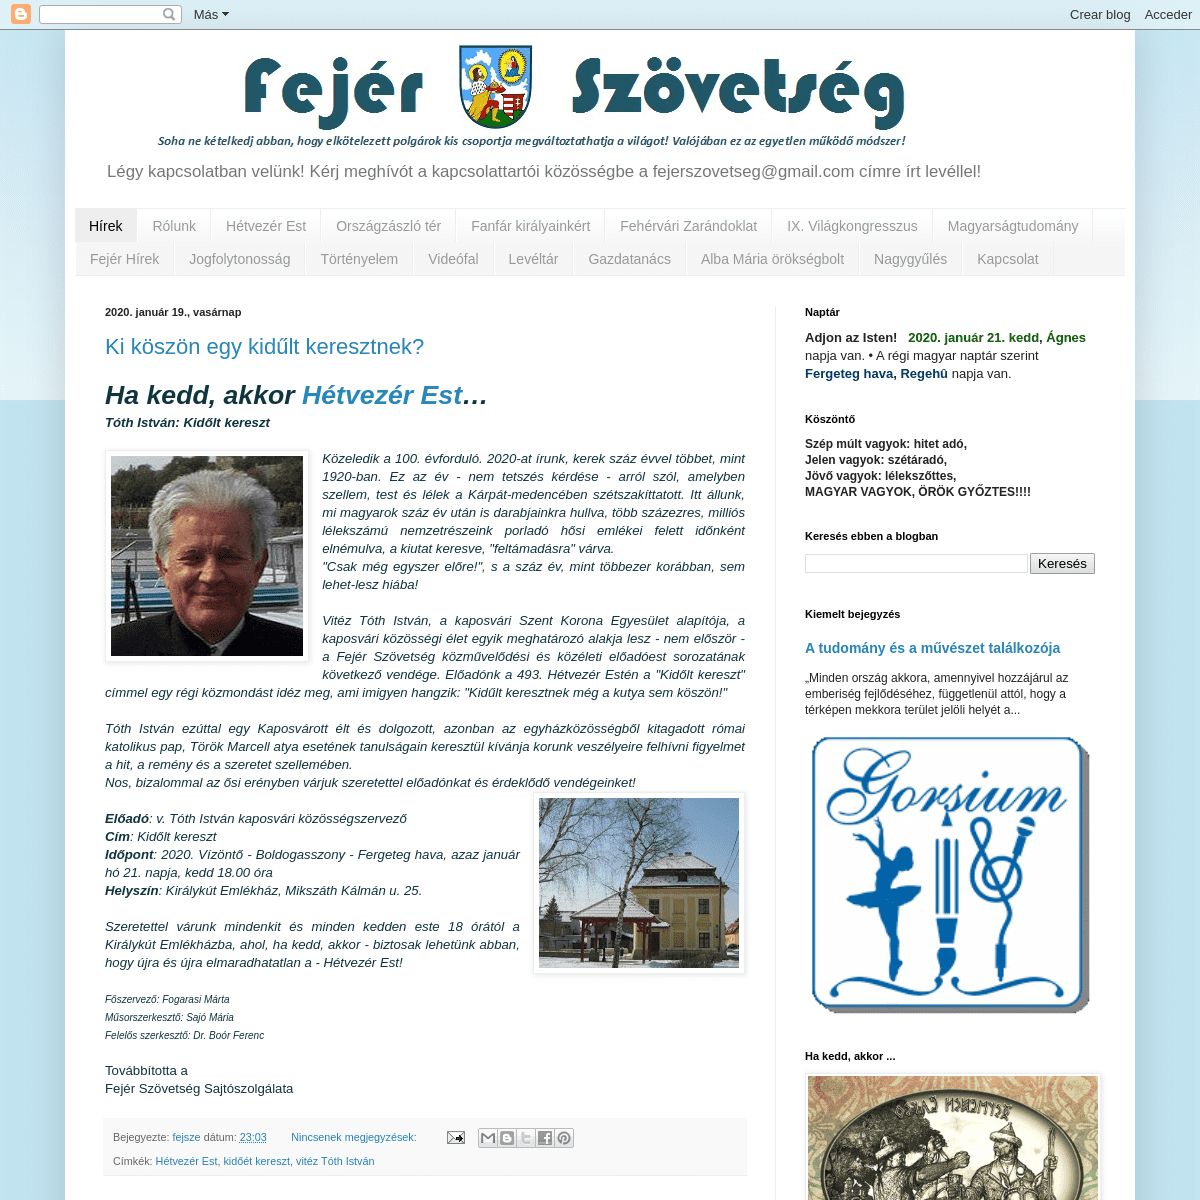 A complete backup of fejerszovetseg.blogspot.com